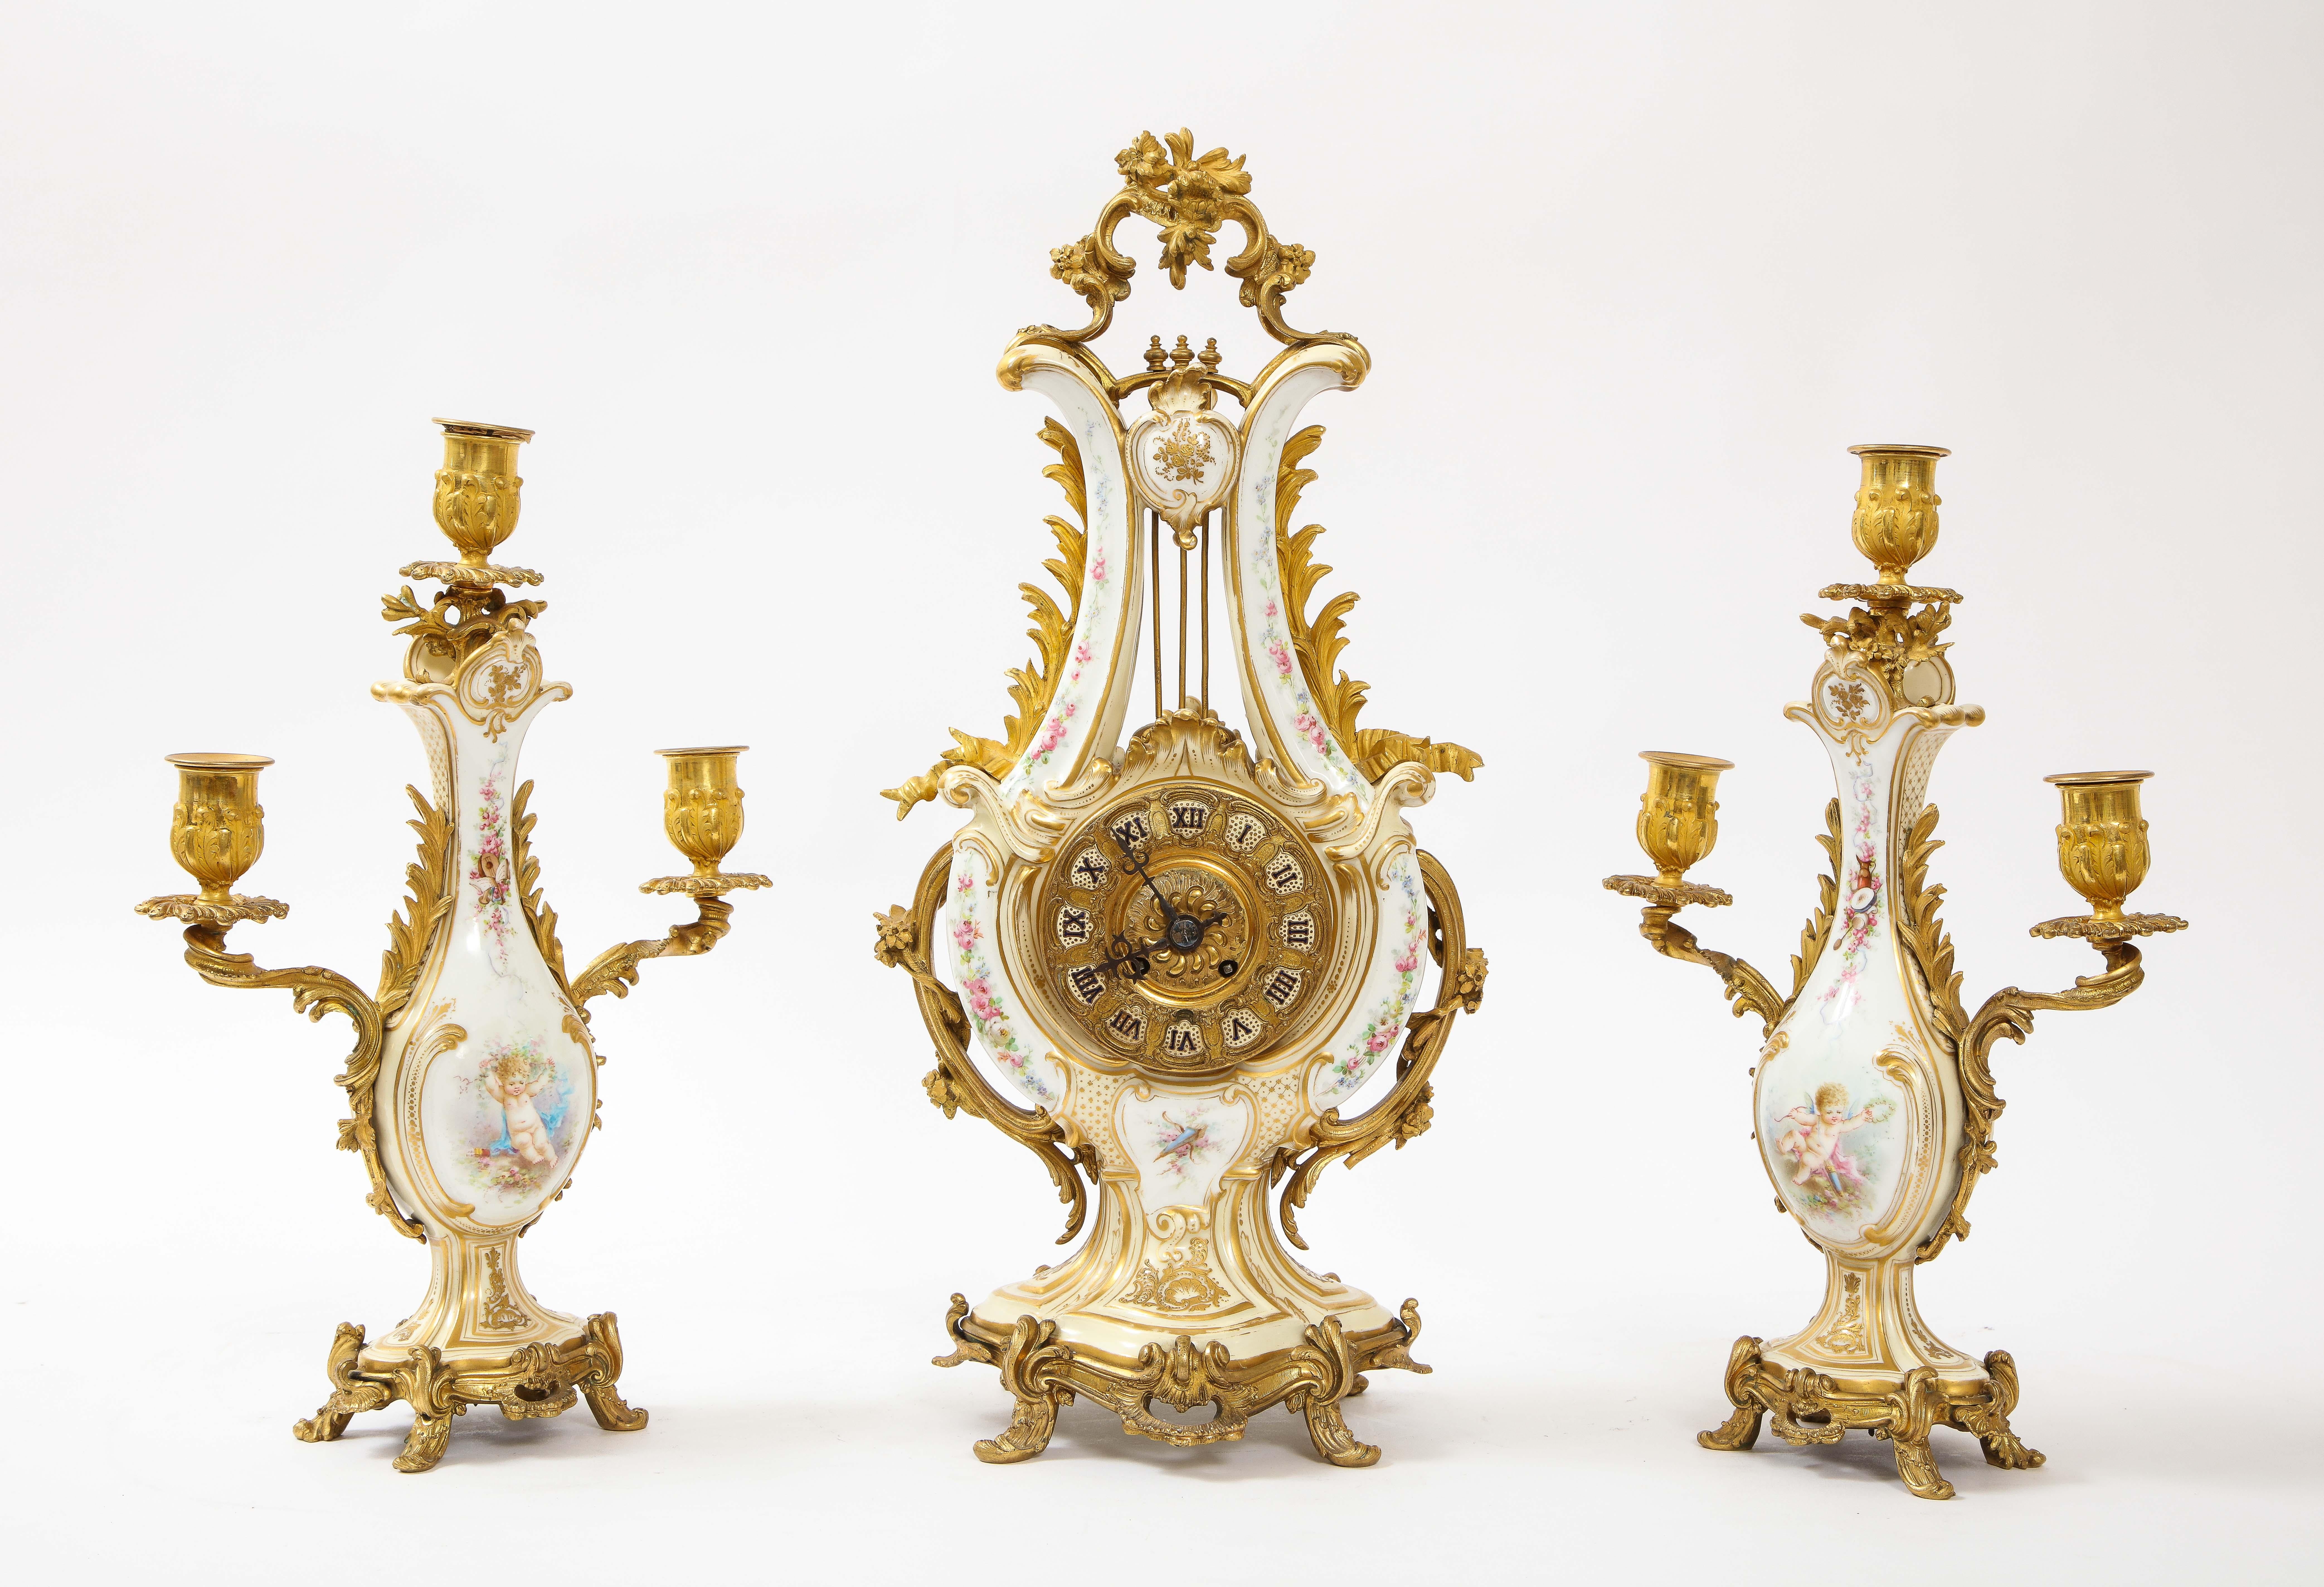 Magnifique et très inhabituel ensemble de garniture de trois pièces en porcelaine blanche de Sèvres montée en bronze doré, datant du 19e siècle, comprenant une horloge et un candélabre à trois lumières. L'horloge en forme de lyre et les candélabres